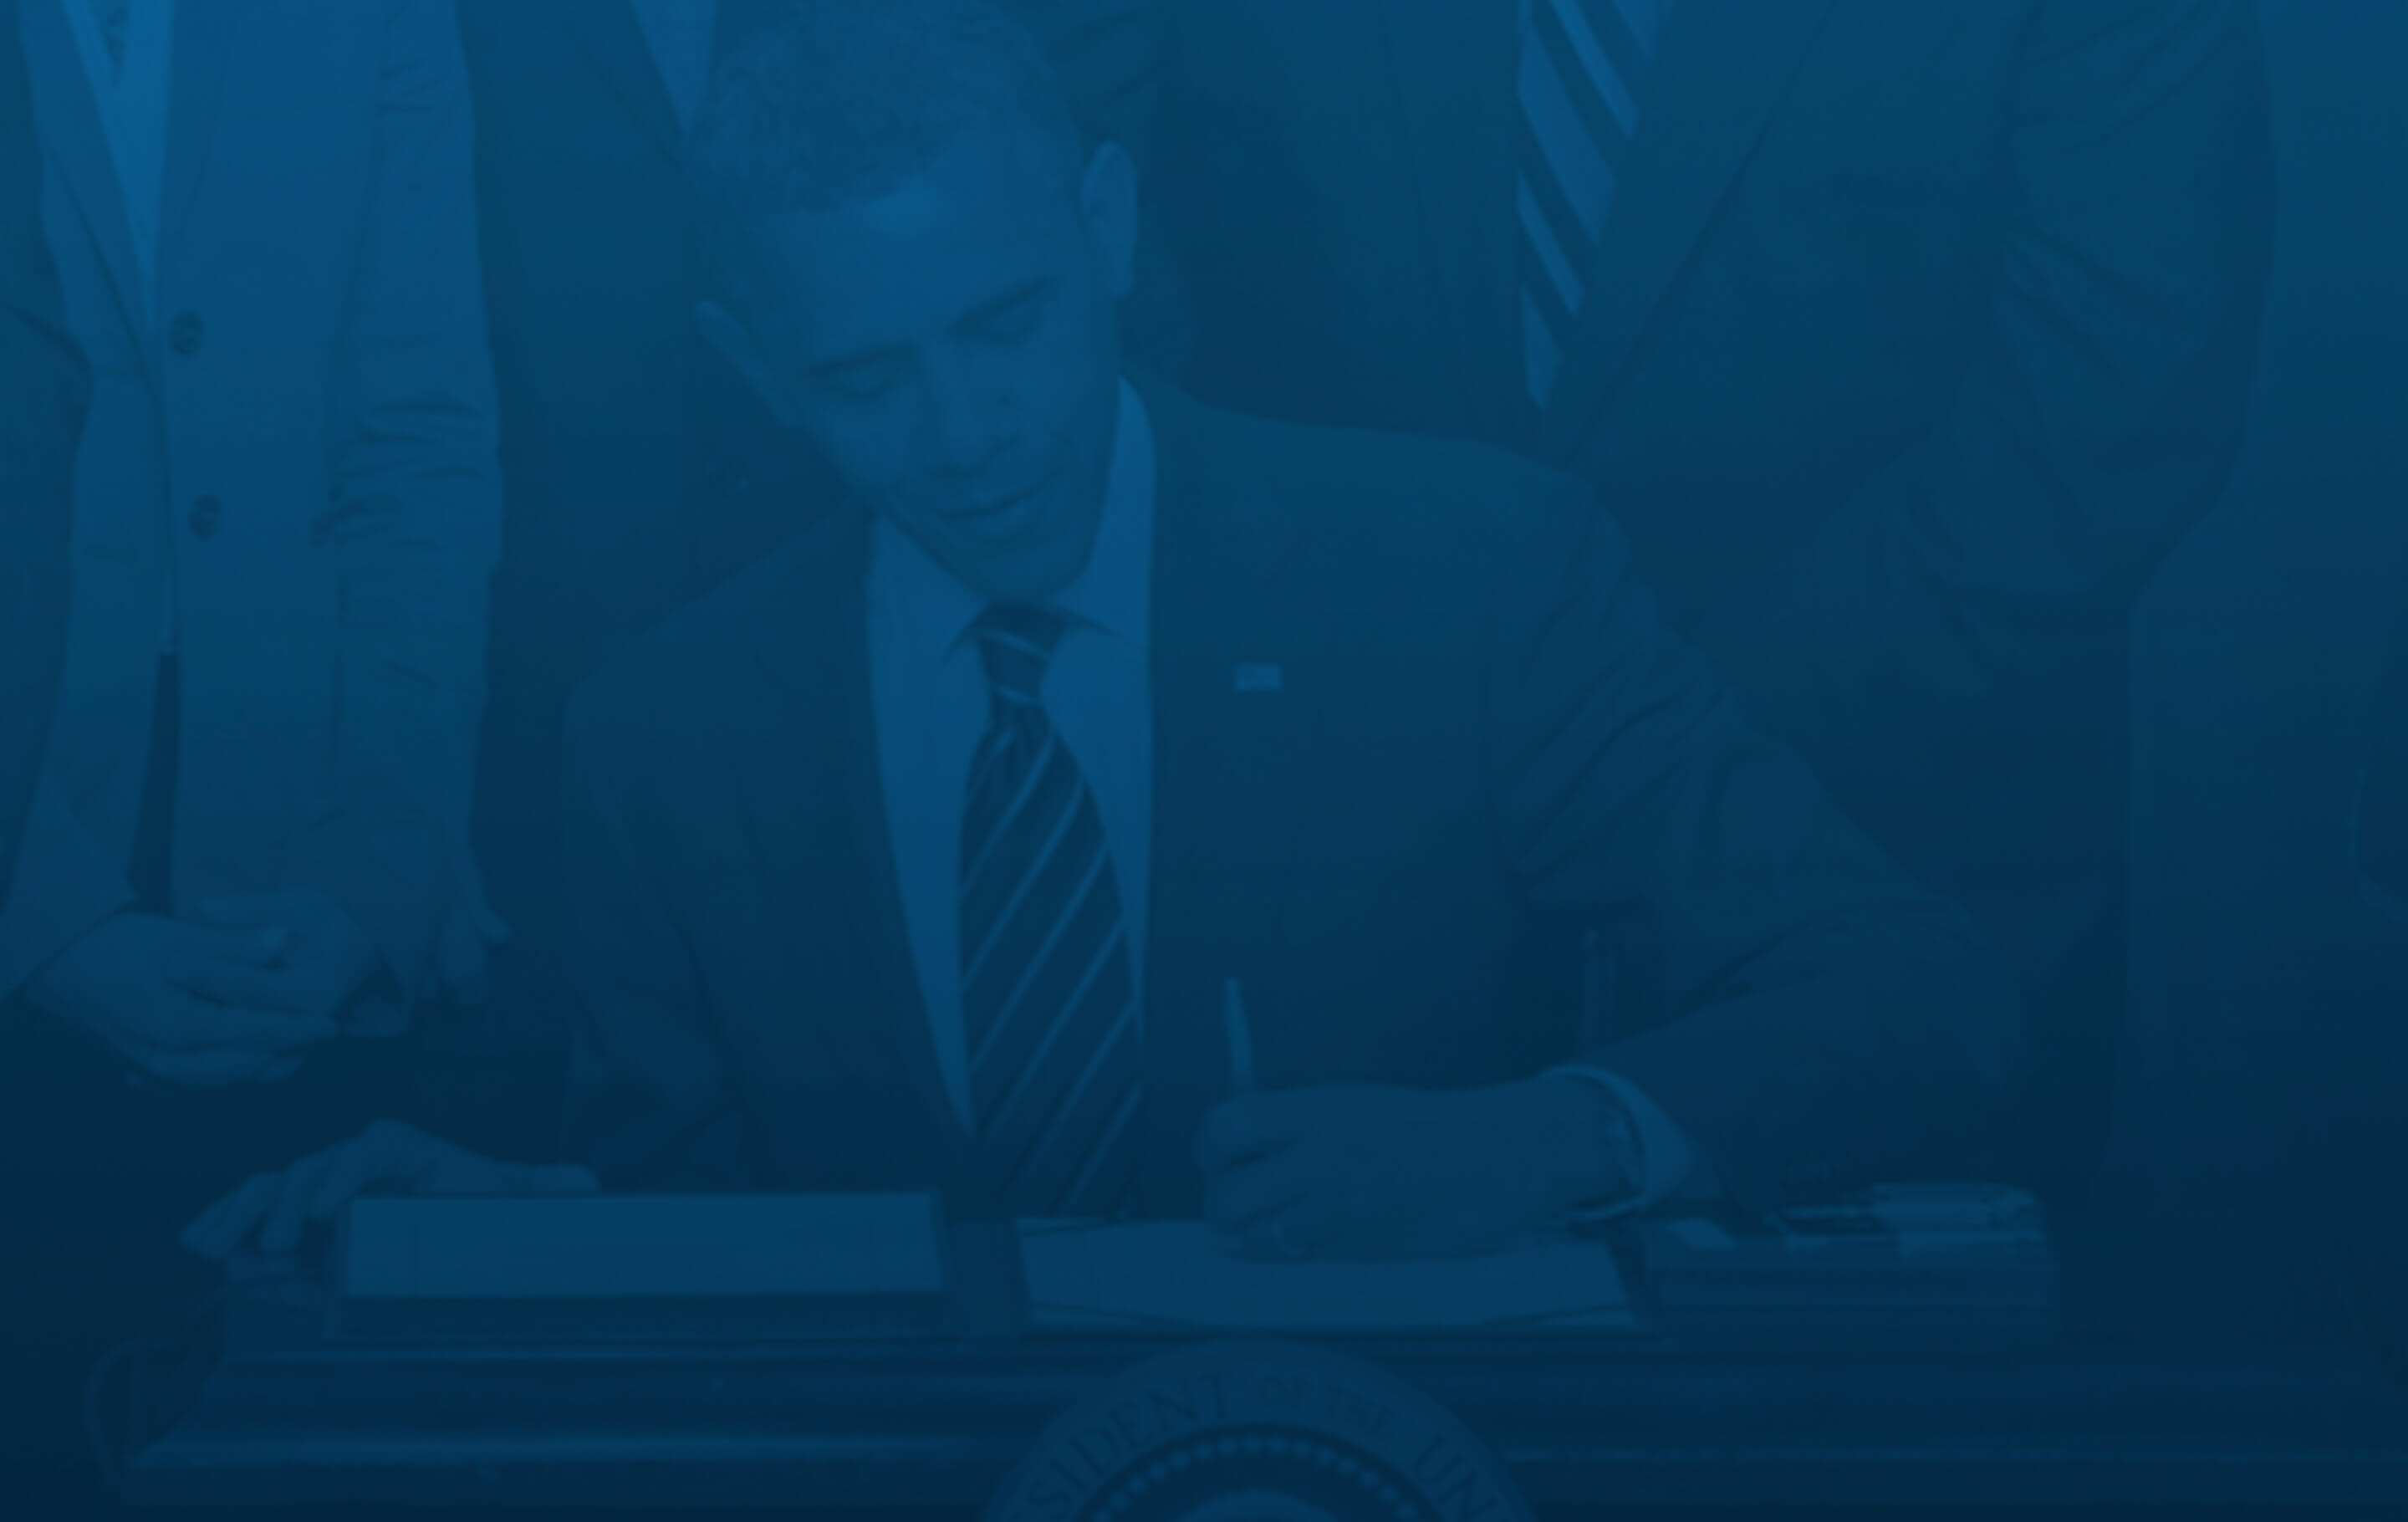 Background image: Barack Obama signing a bill